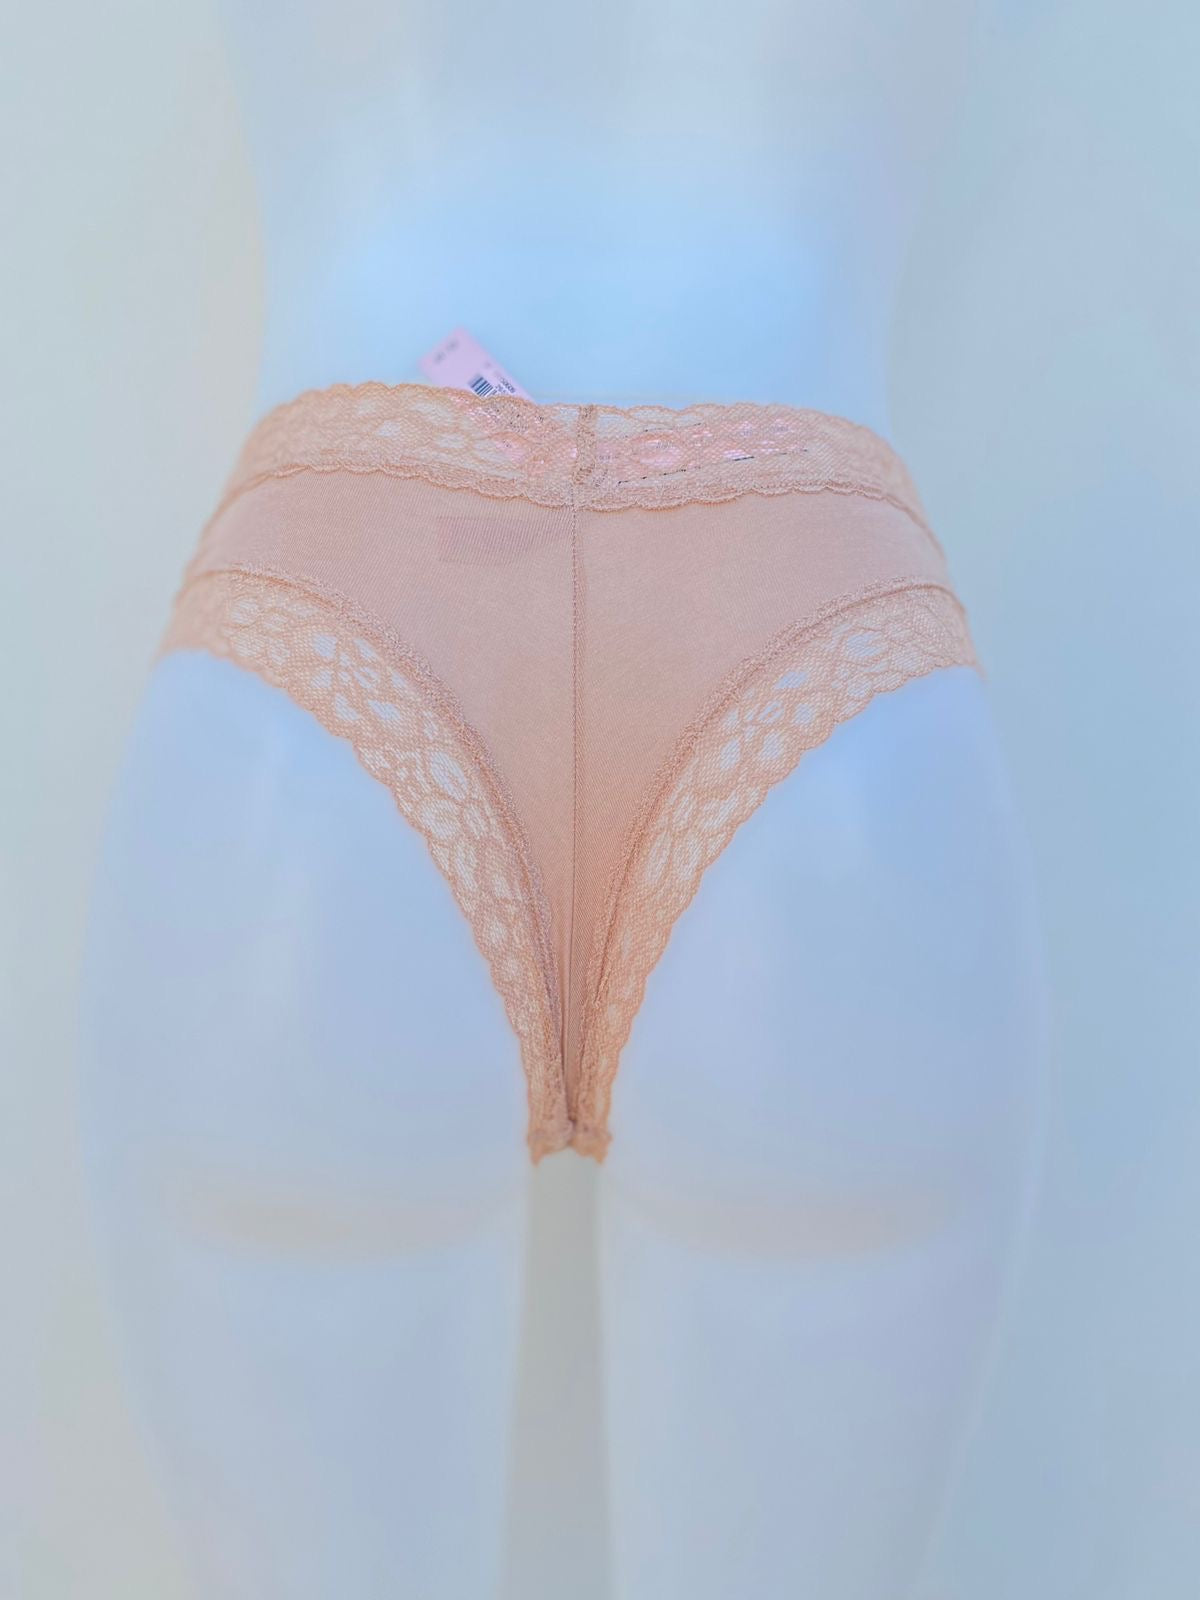 Panti Victoria’s Secret original crema con encaje en la parte inferior.